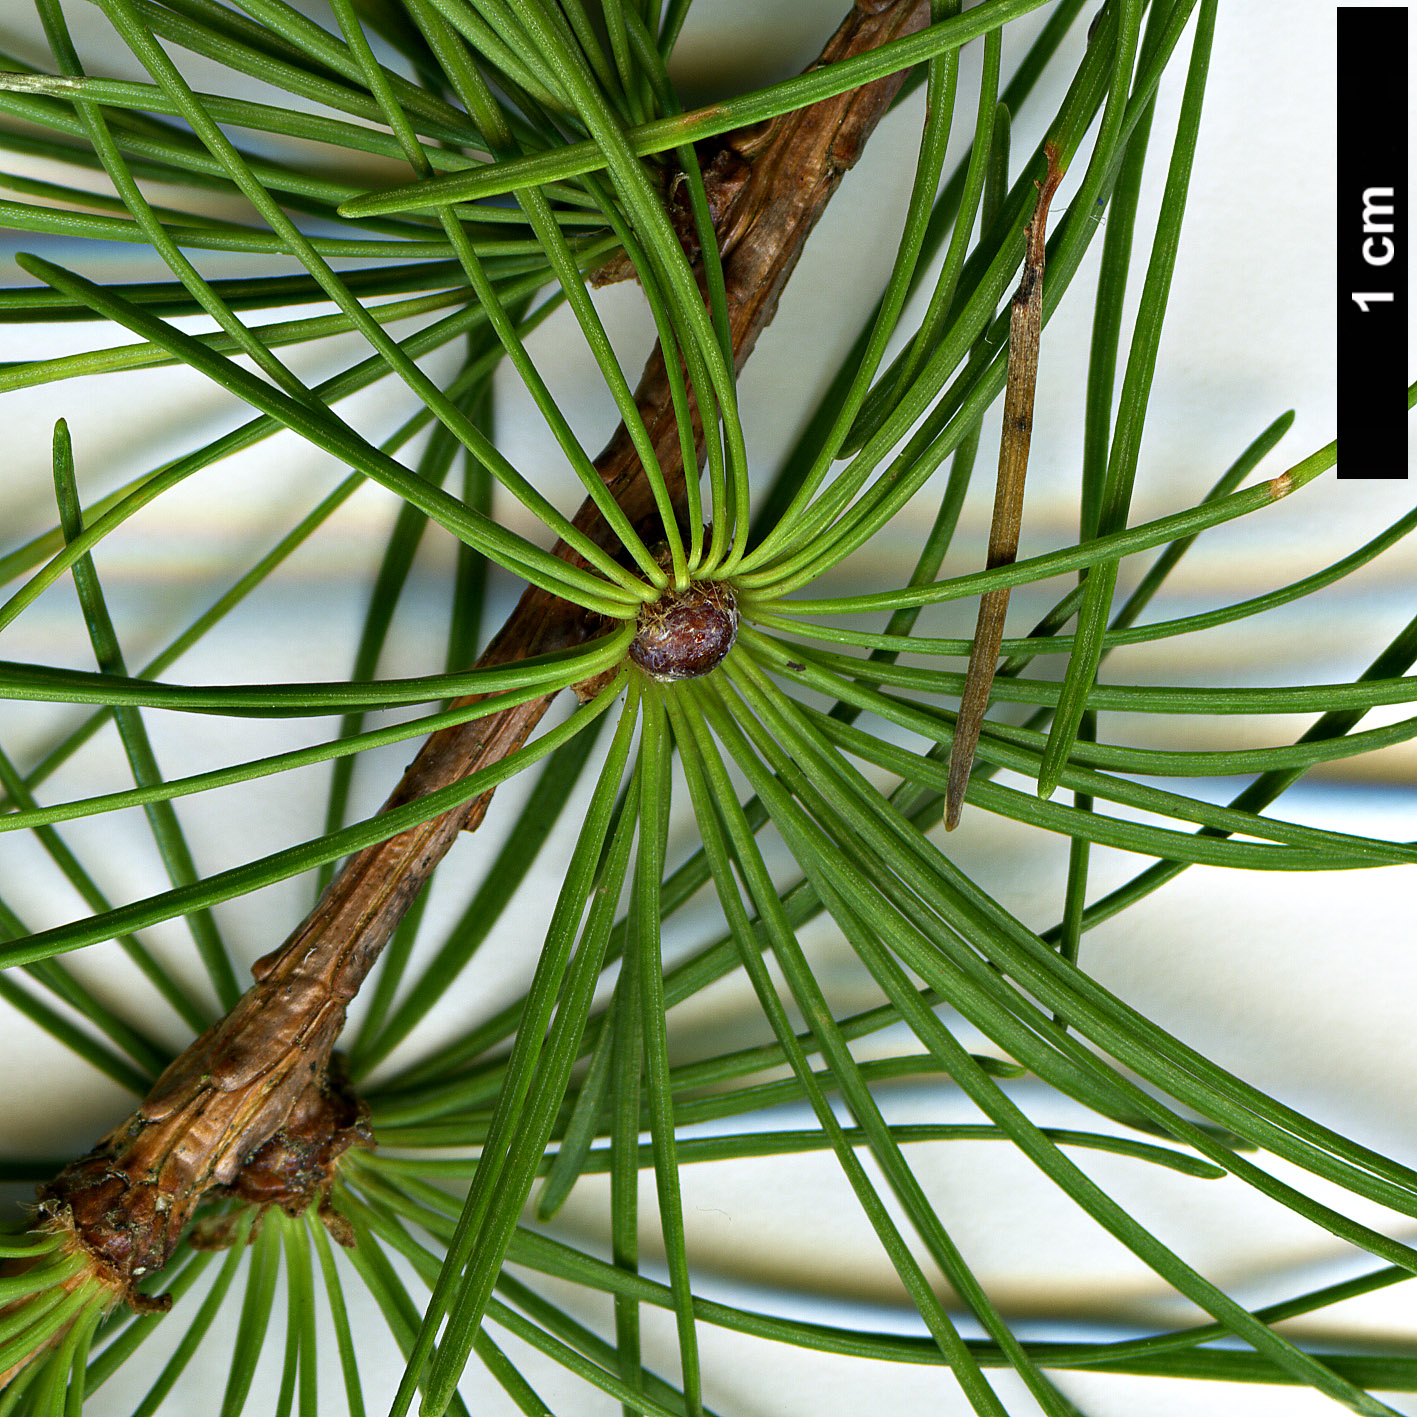 High resolution image: Family: Pinaceae - Genus: Larix - Taxon: ×pendula - SpeciesSub: (L.decidua × L.laricina)